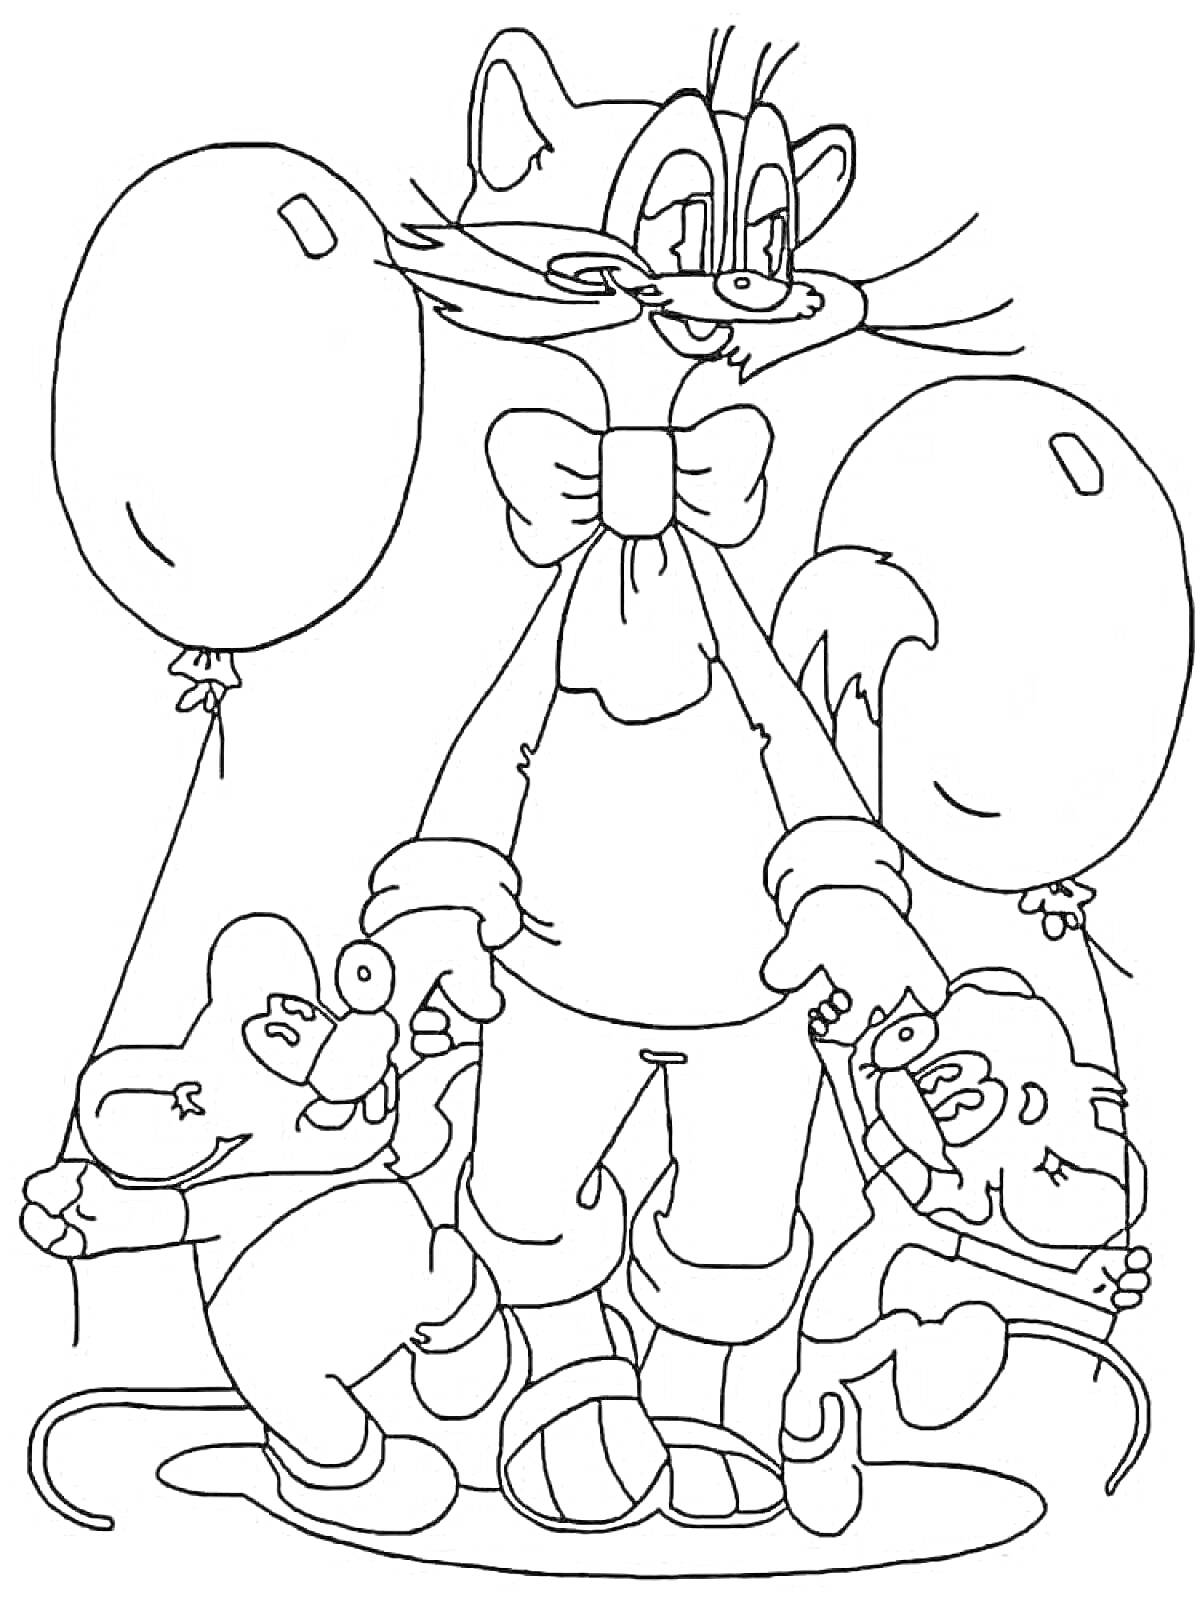 Раскраска Леопольд с мышатами и воздушными шариками